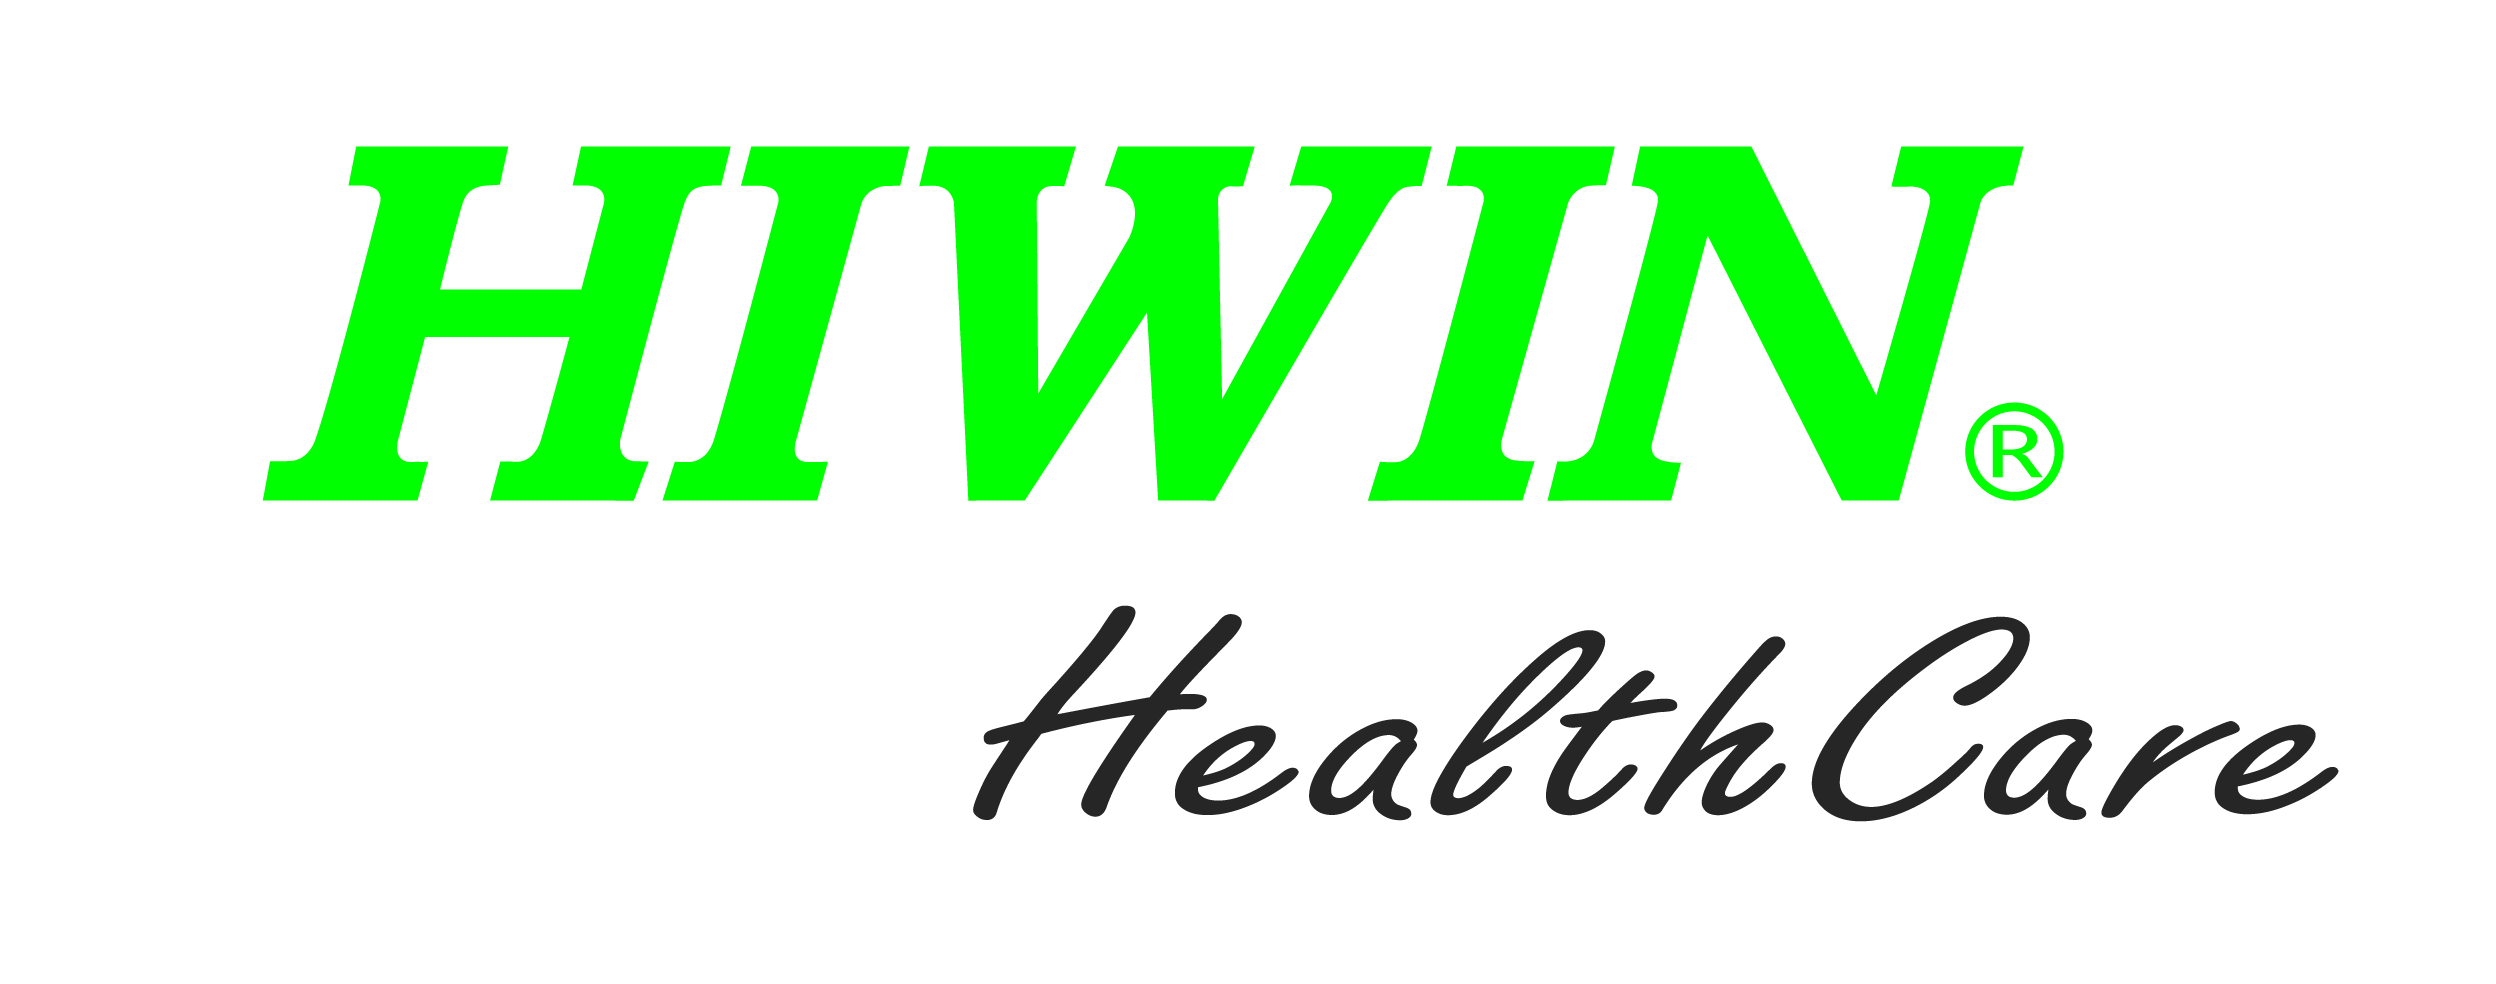 HIWIN Healthcare_logo-01.jpg